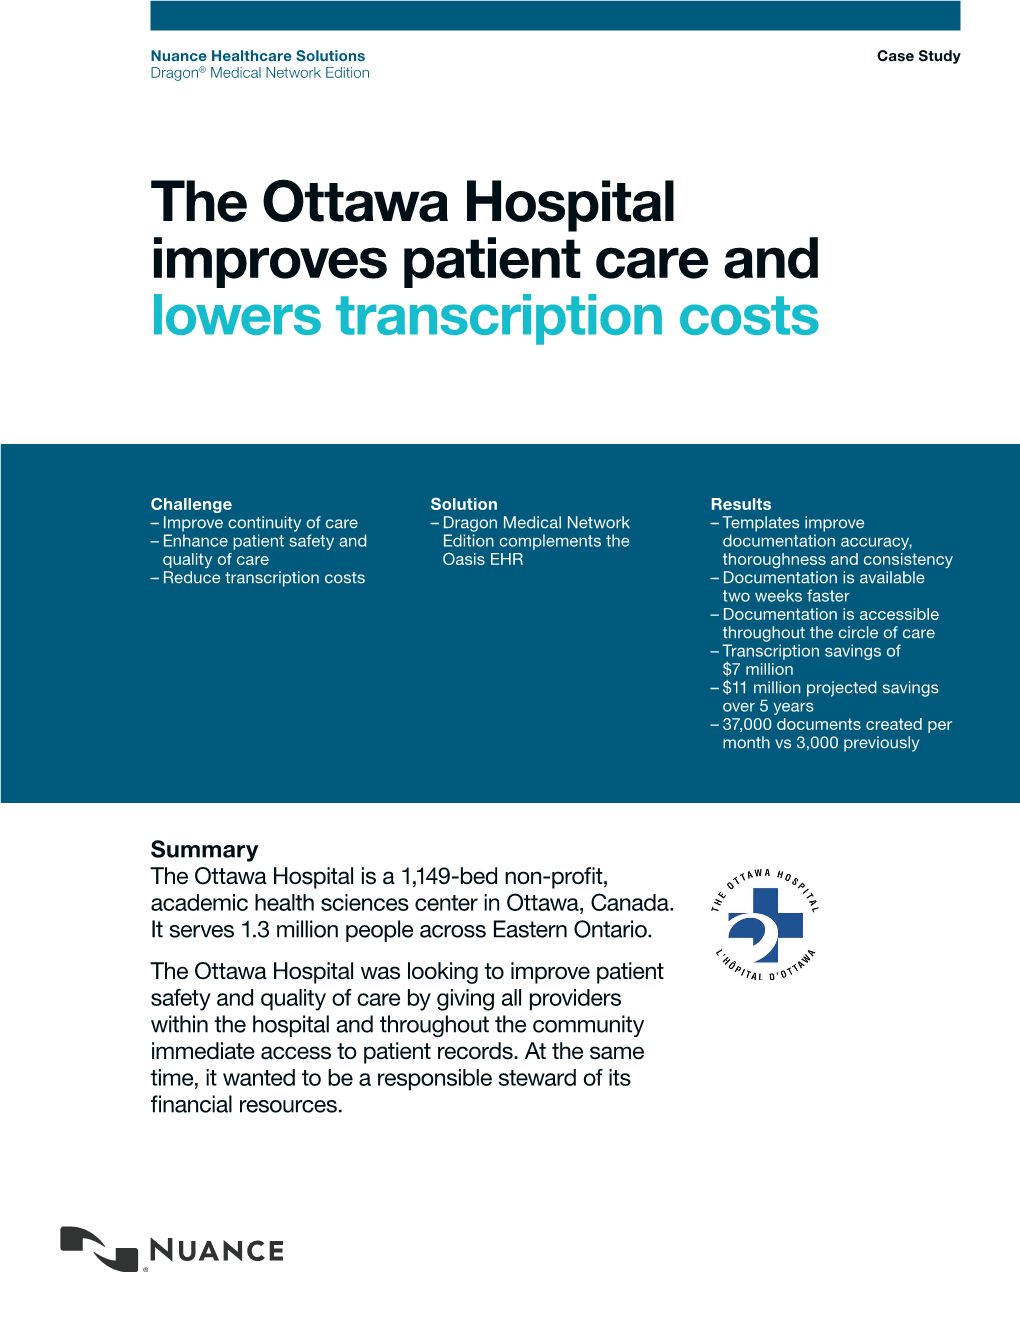 Ottawa Hospital Case Study